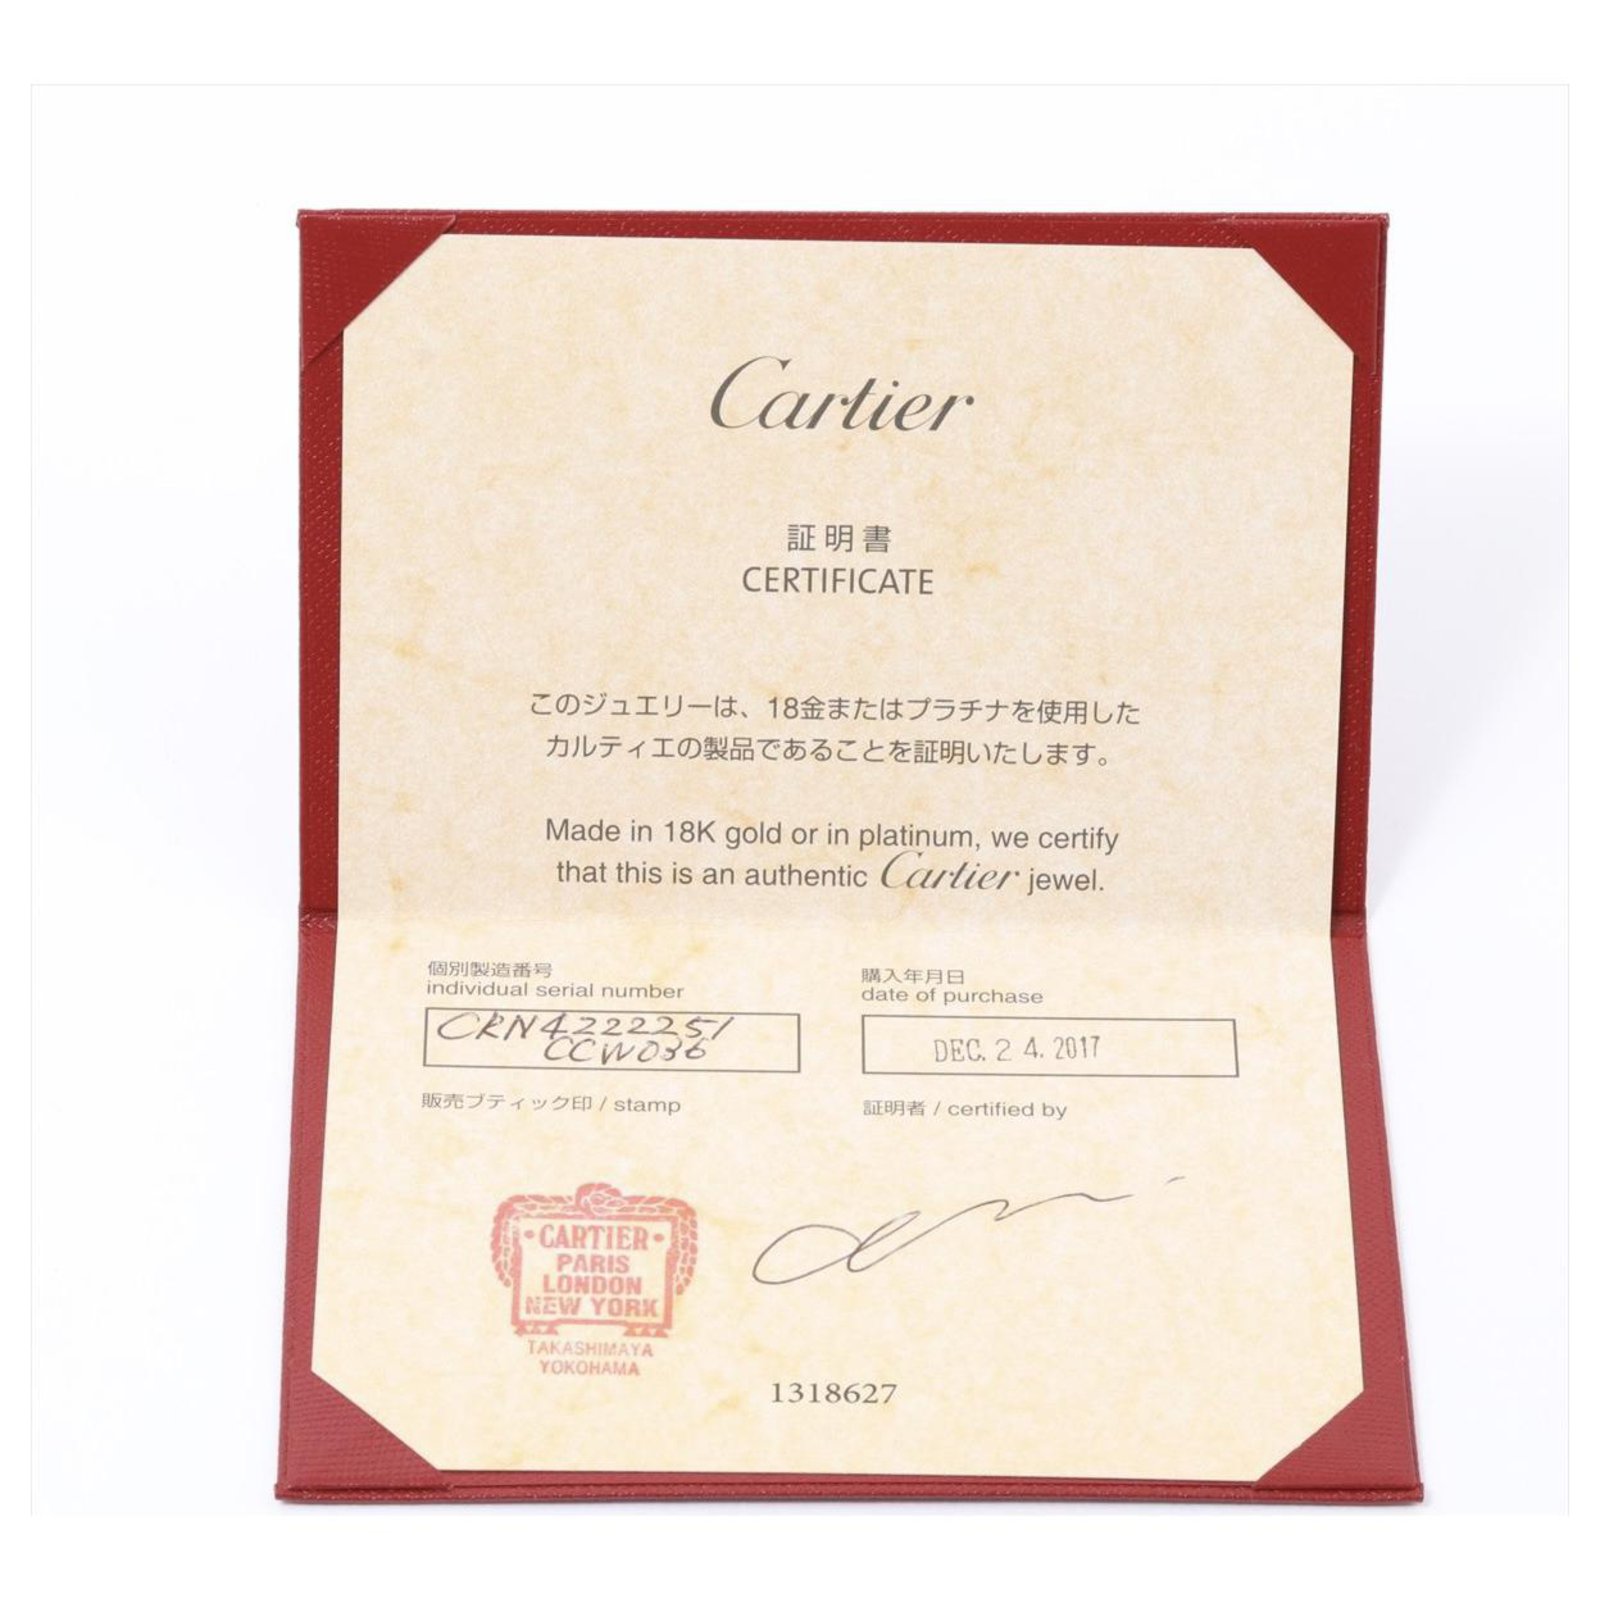 cartier certificate number